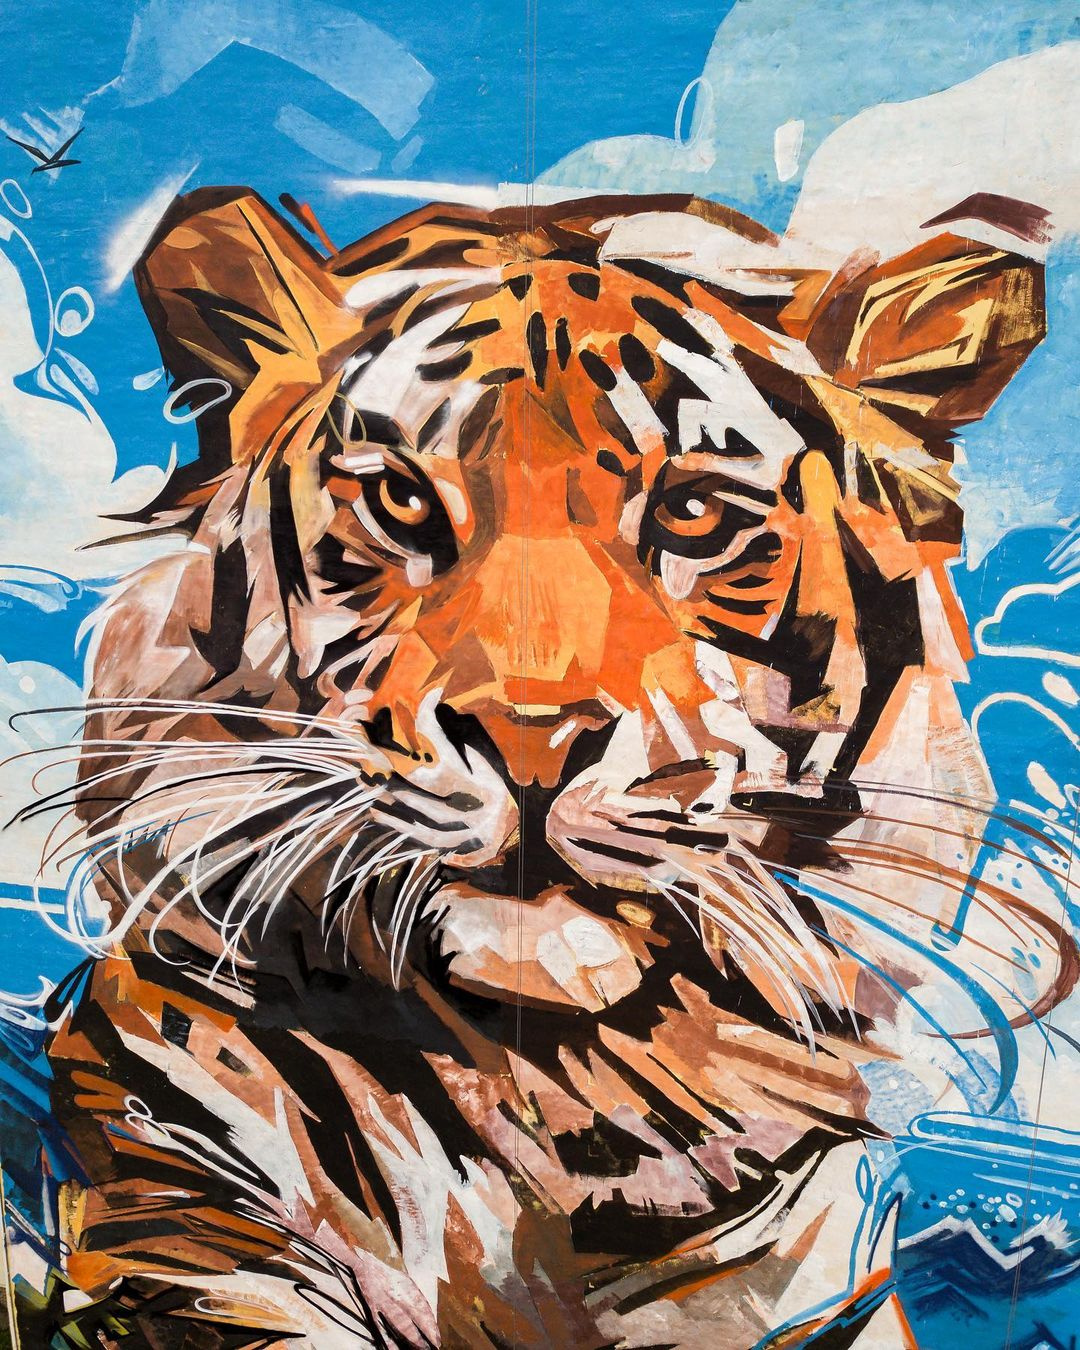 Во Владивостоке ежегодно проходит День тигра — фестиваль в честь краснокнижного амурского вида. На фото — граффити